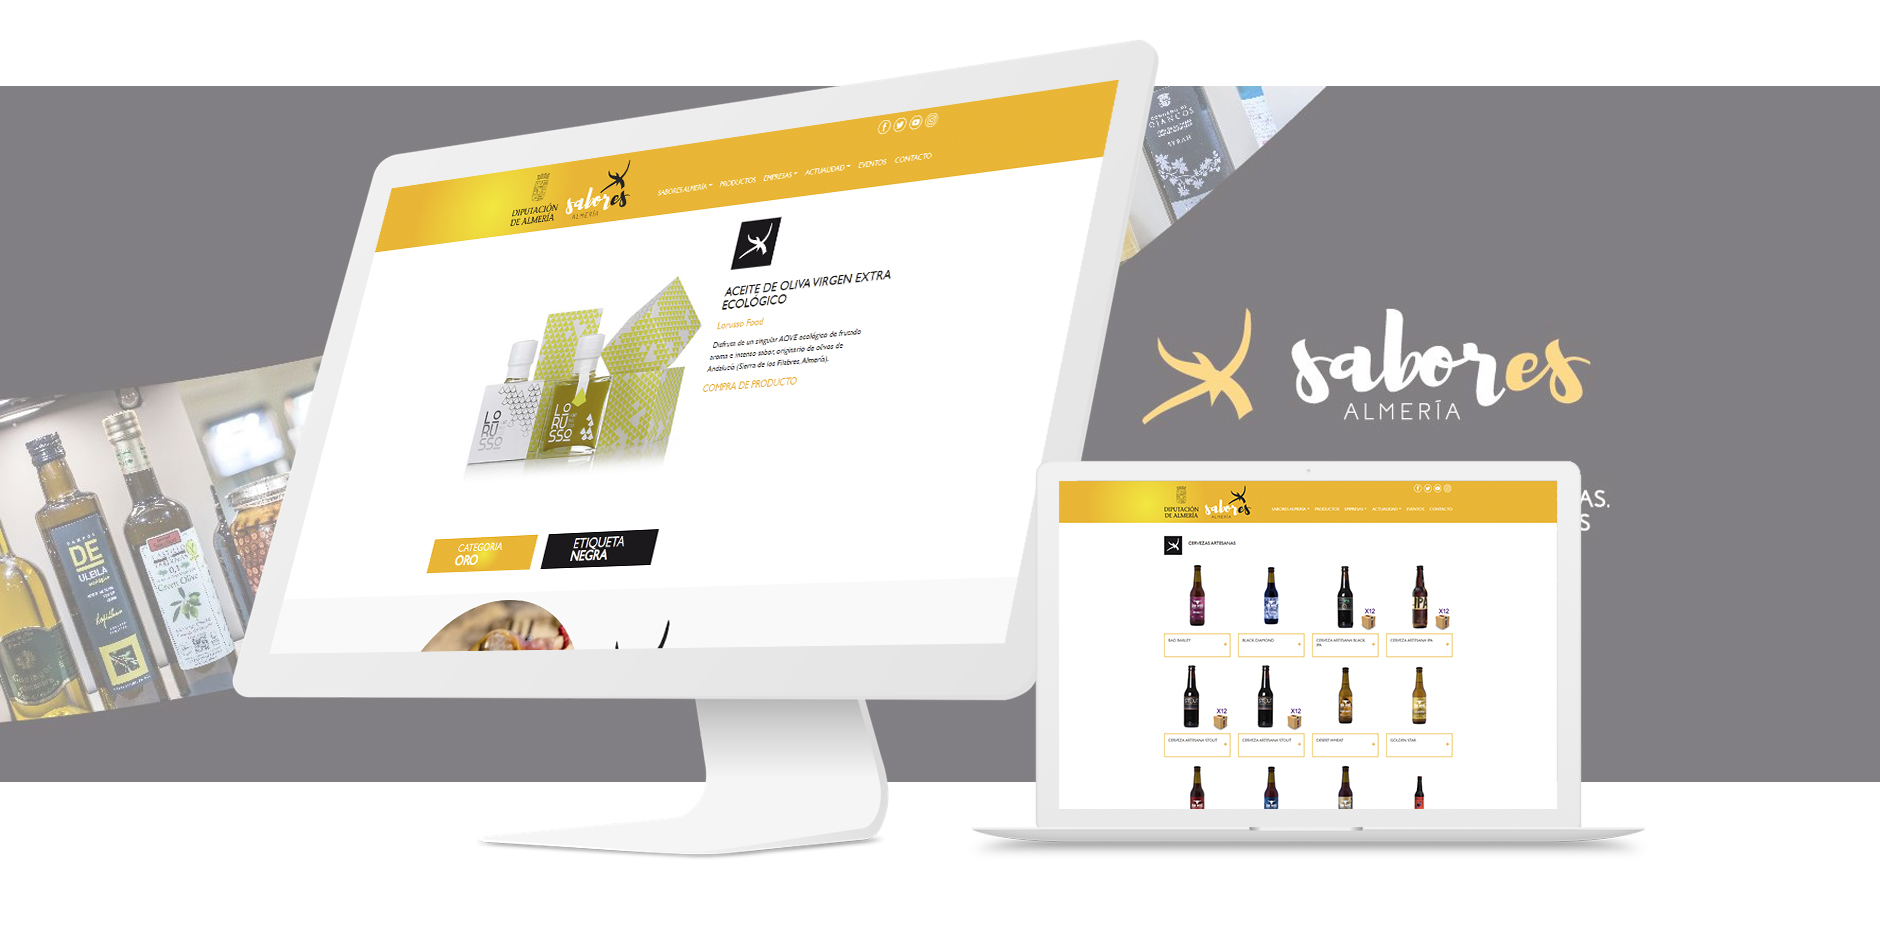 Muestra del diseño responsive de la web Sabores Almería en PC y portátil